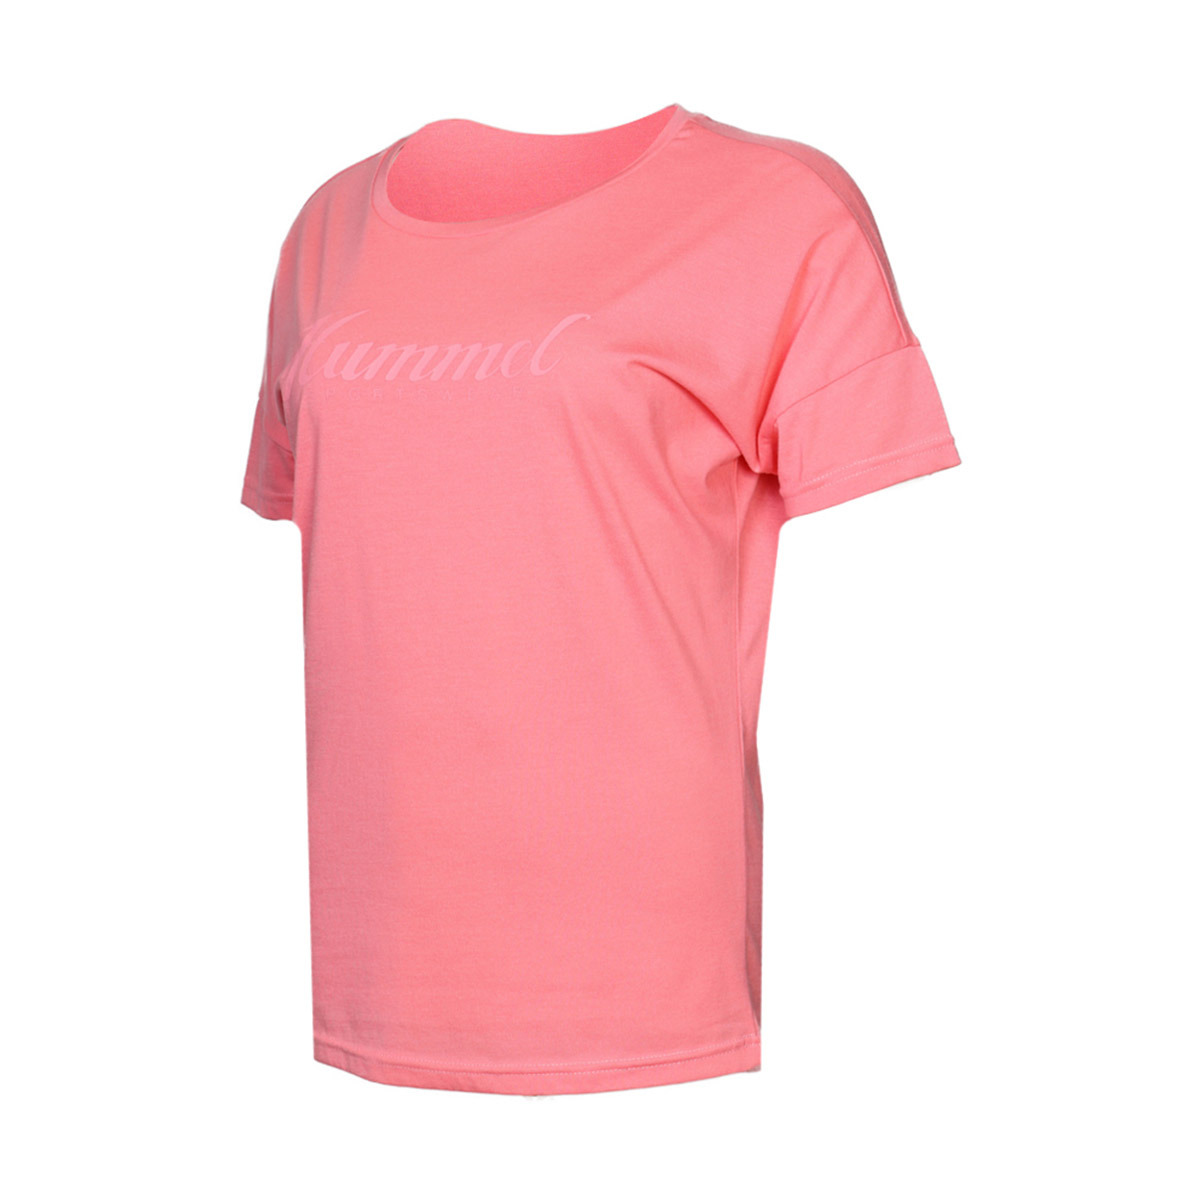 Flo HMLFERIN  T-SHIRT S/S Çok Renkli Kadın Kısa Kol Tişört. 1